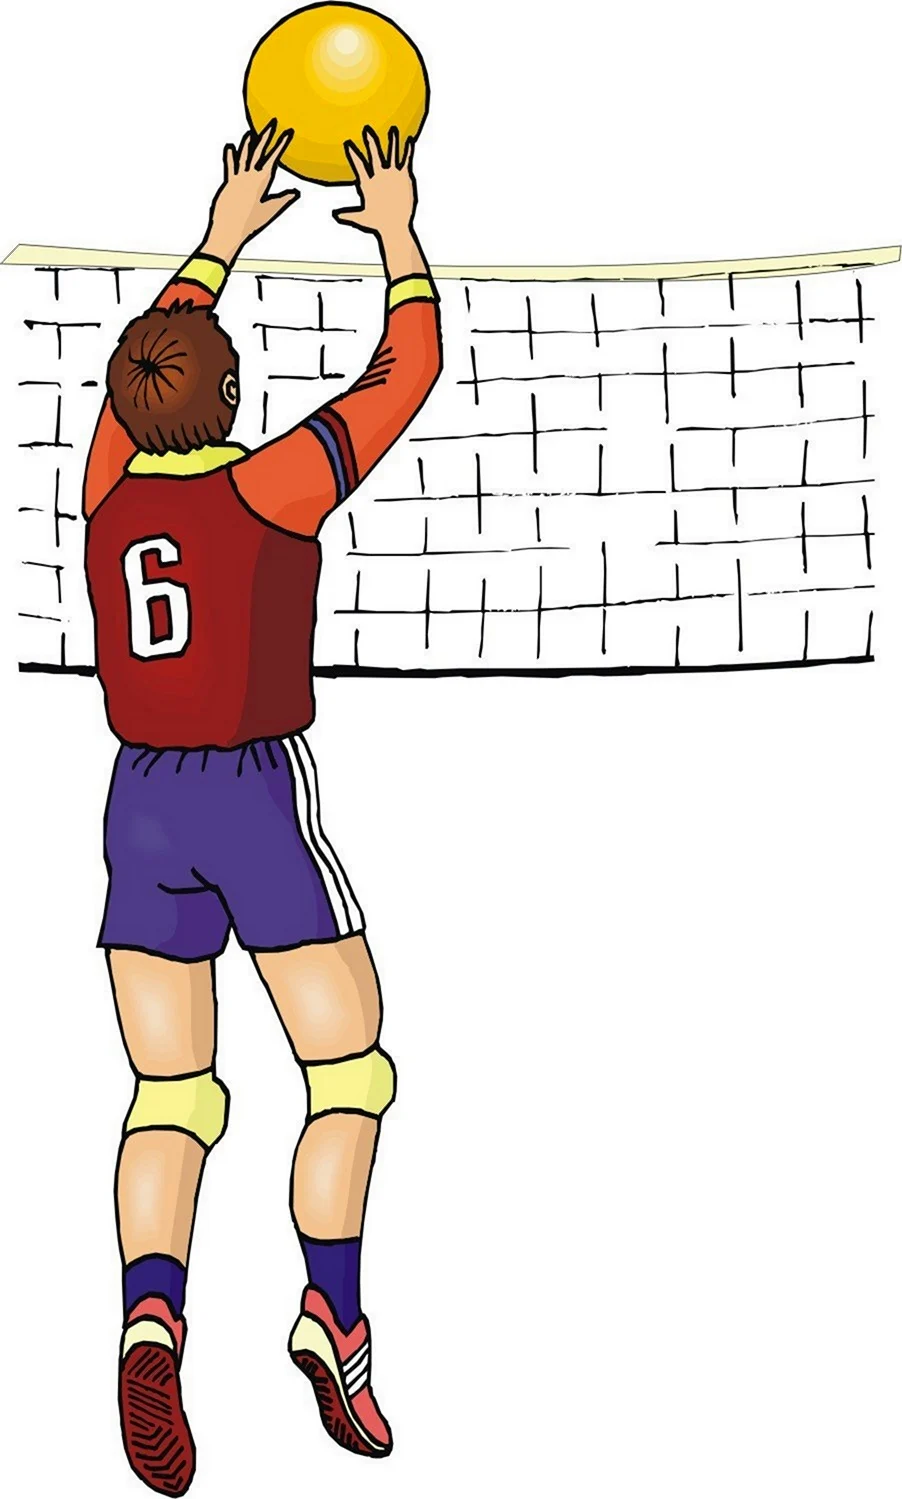 Иллюстрация на тему волейбол